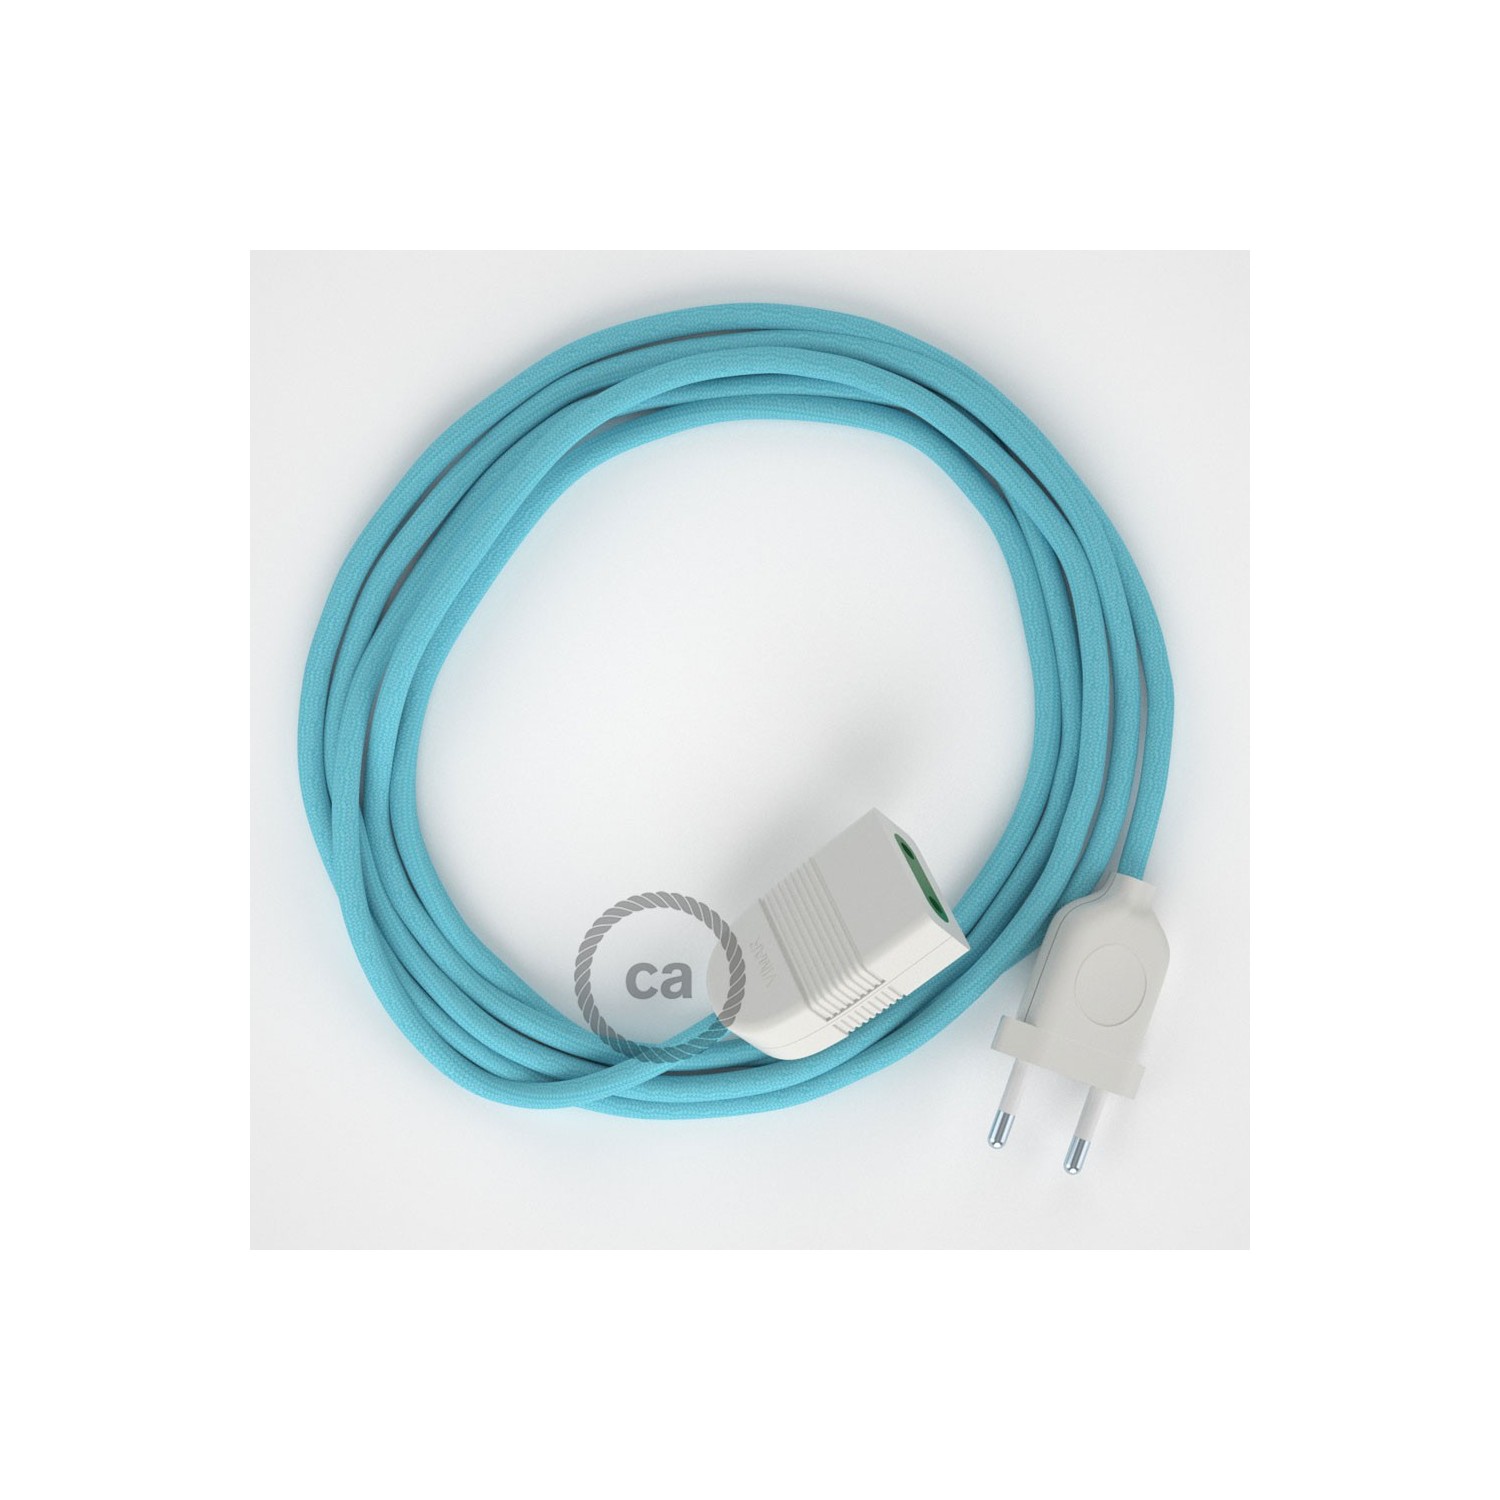 Podaljševalni kabel za napajanje (2P 10A) Baby blue rejon RM17 - Made in Italy